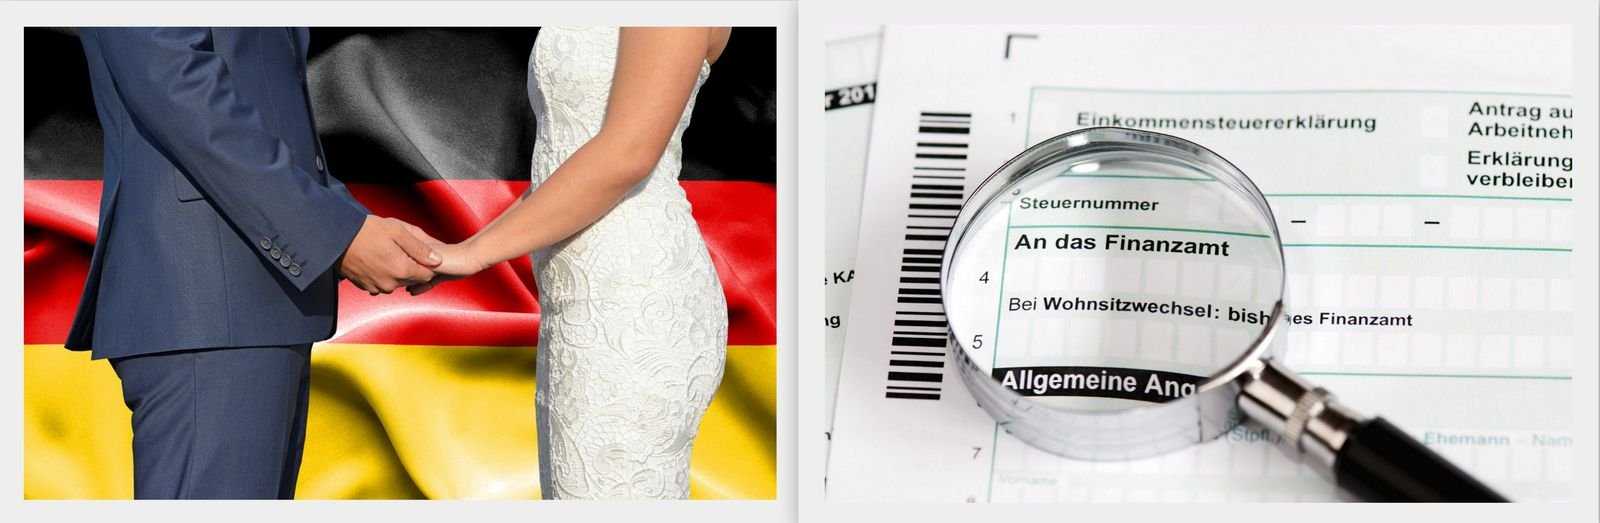 Расторжение брака в германии | krimhand rechtsanwaltkanzlei